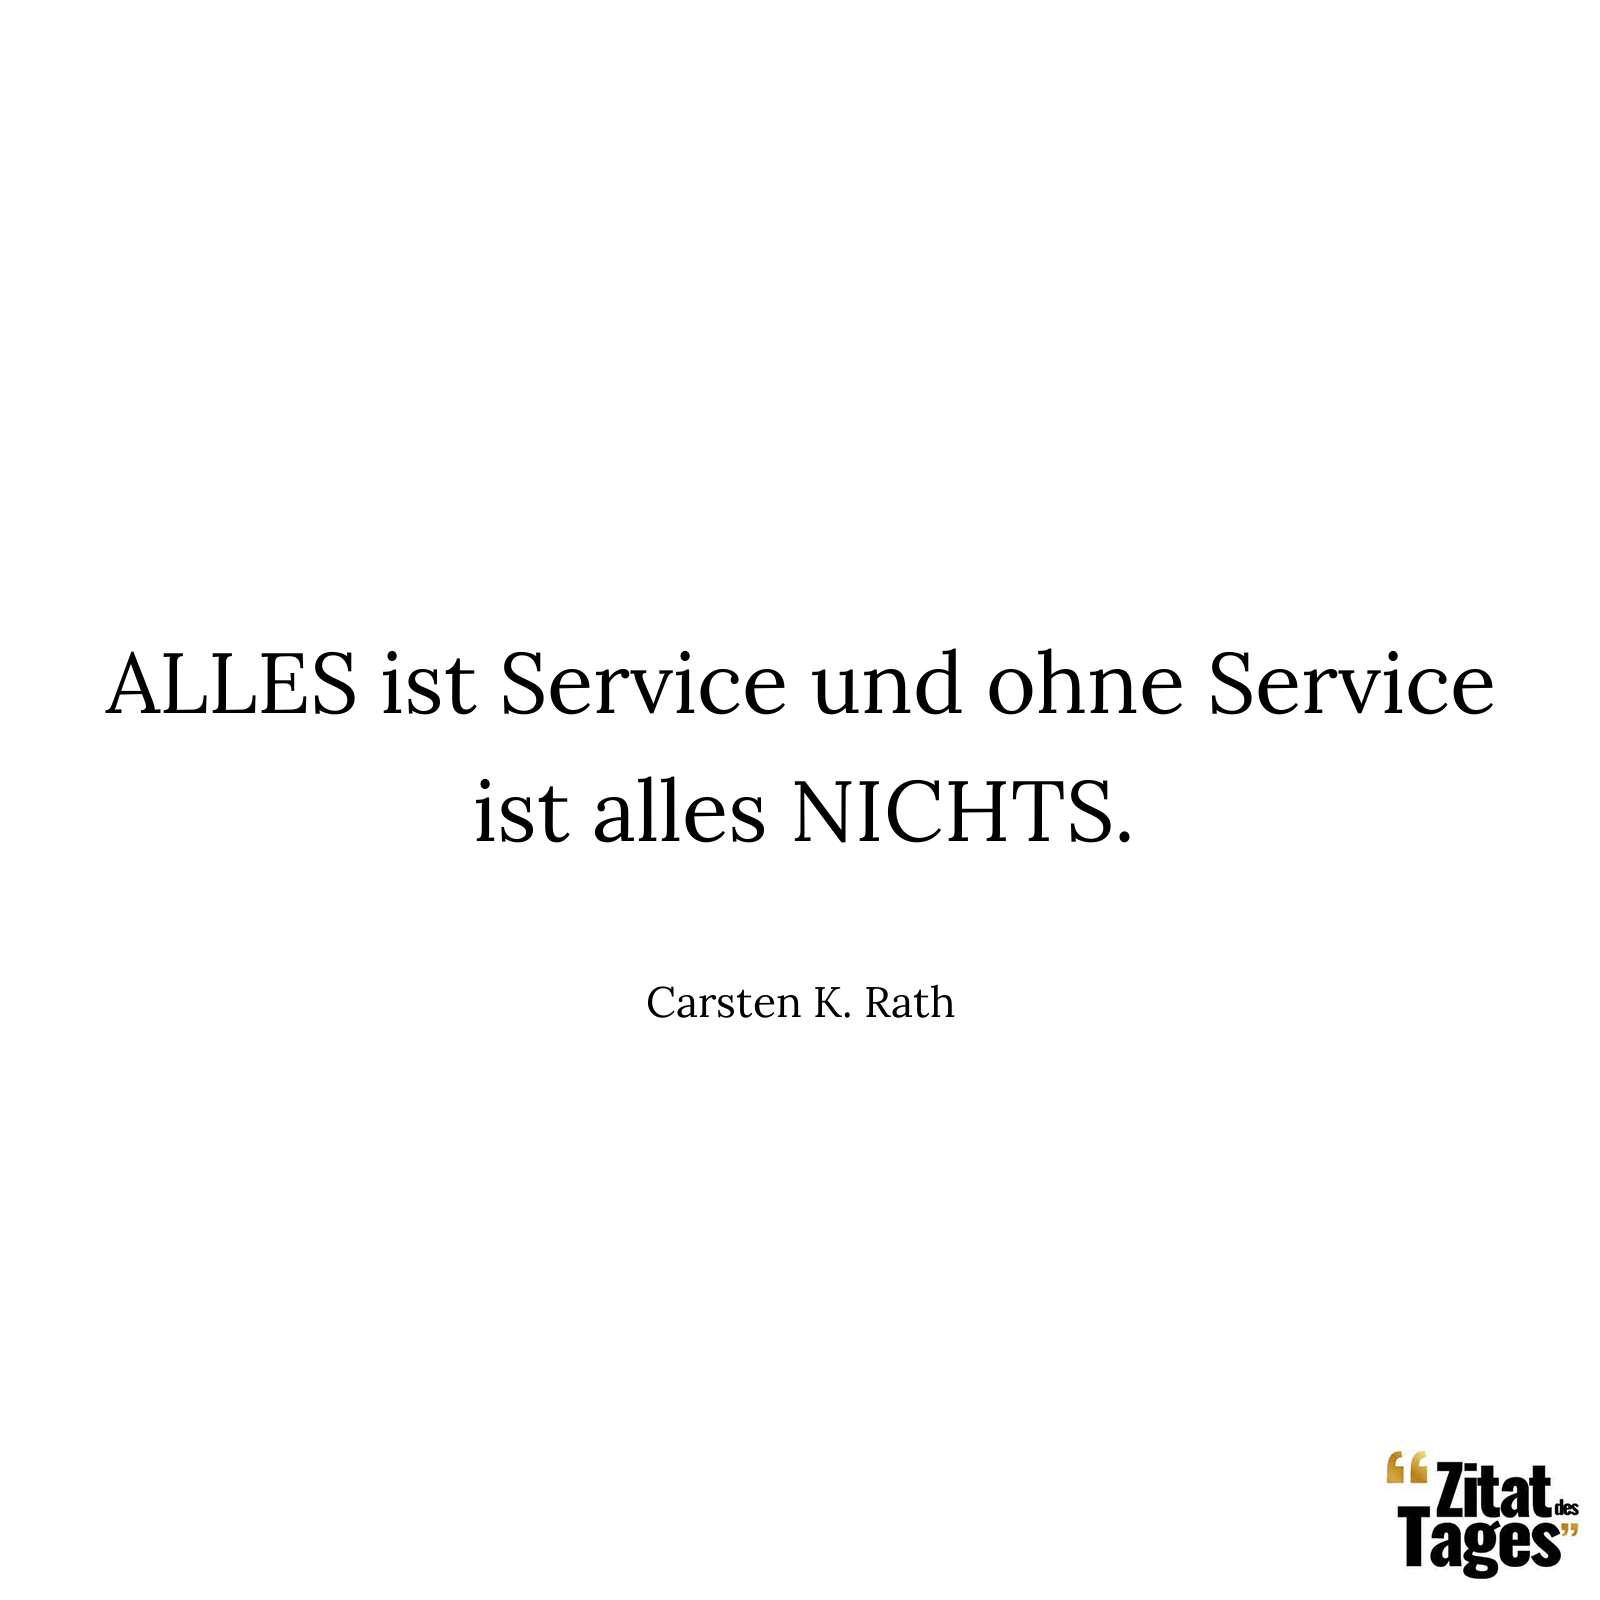 ALLES ist Service und ohne Service ist alles NICHTS. - Carsten K. Rath